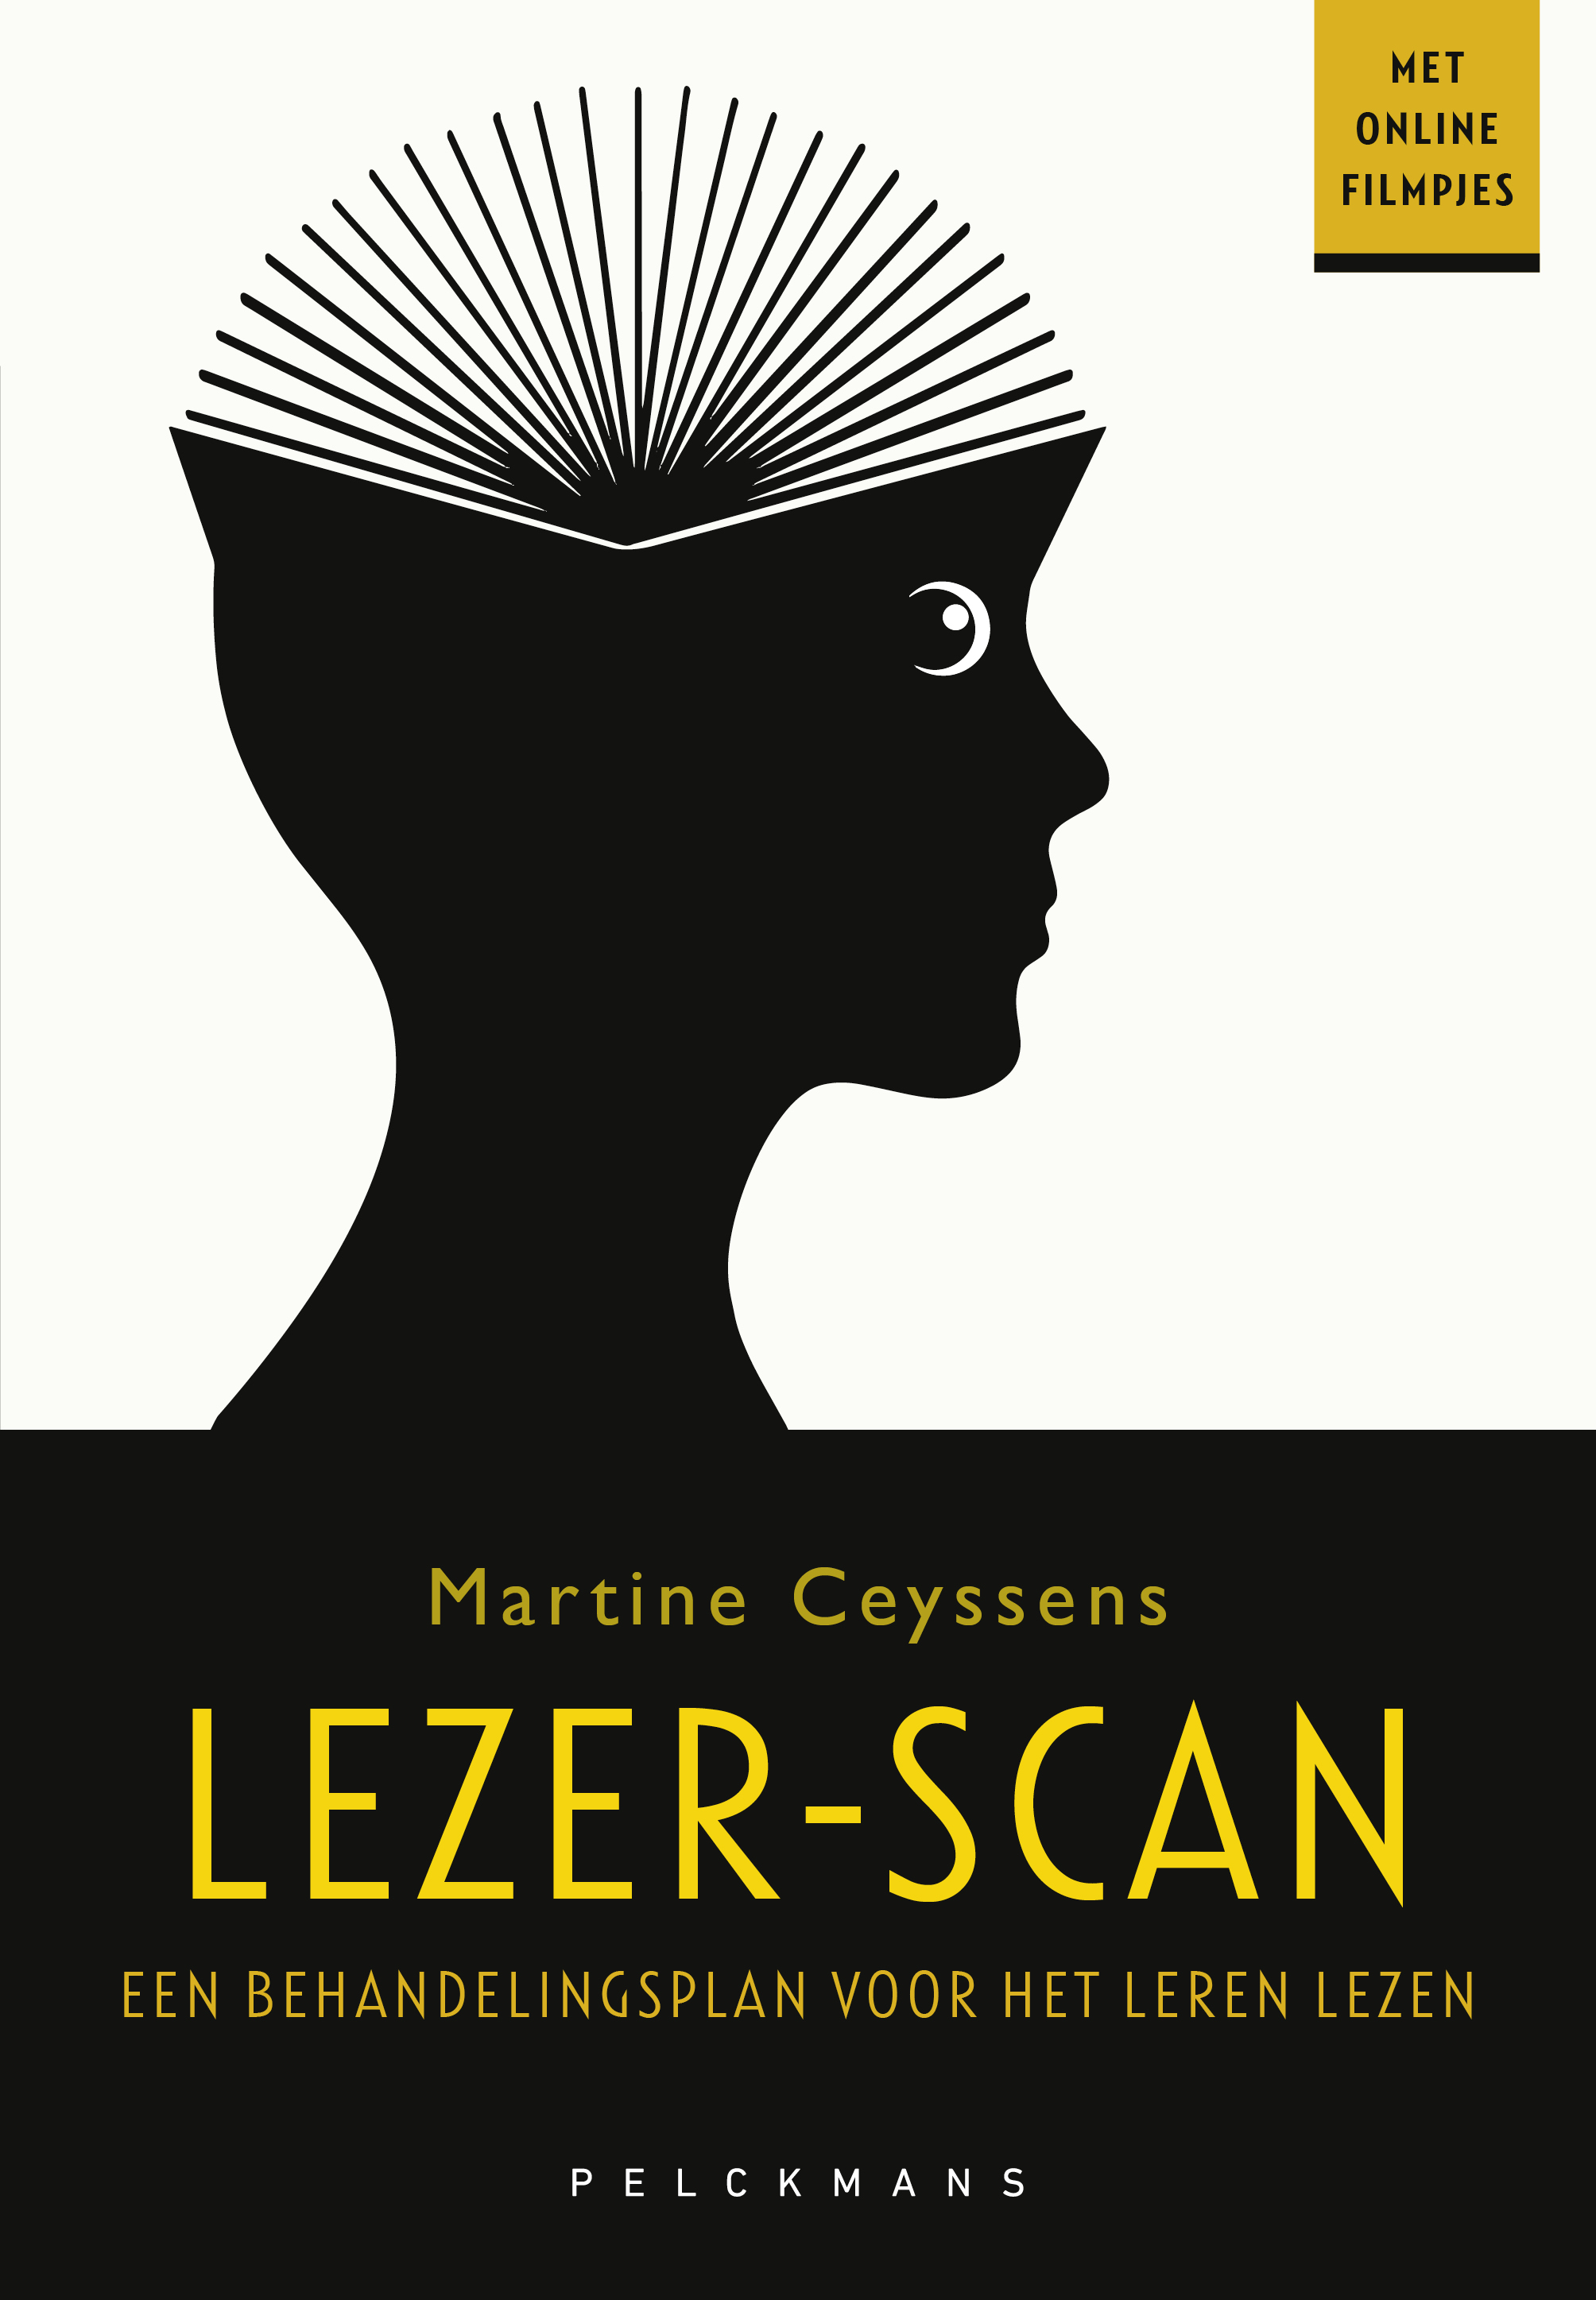 lezer-scan